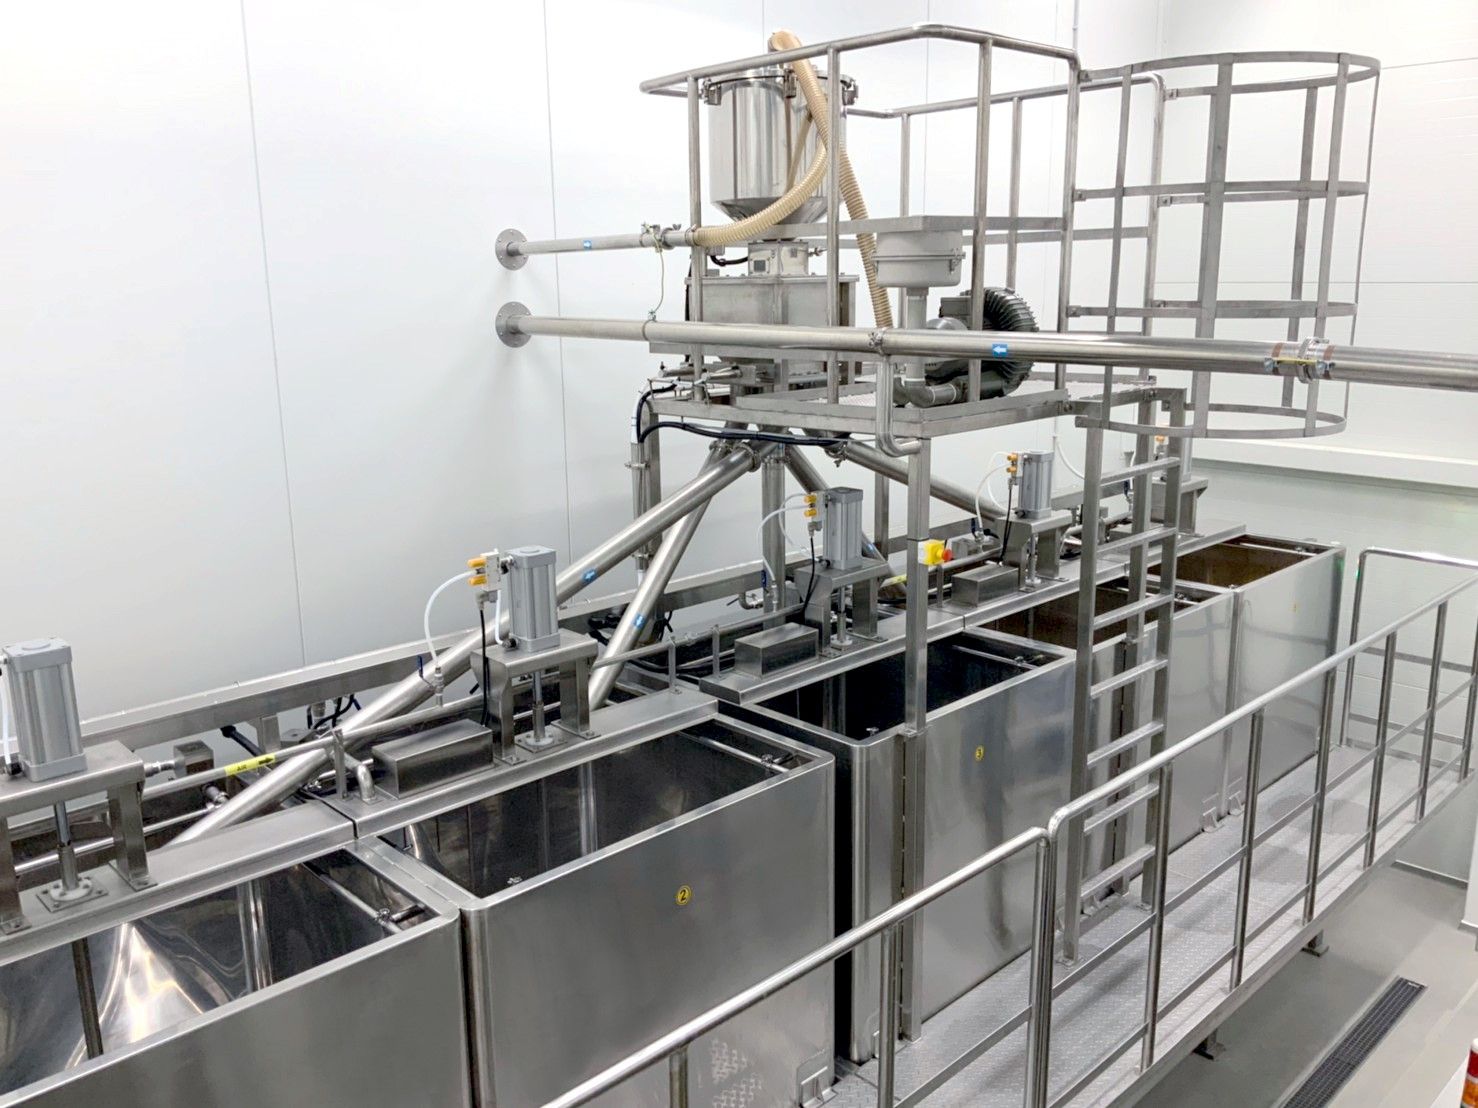 Controlar automaticamente o tempo de imersão para garantir a qualidade e estabilidade do processo de imersão de feijão, para garantir que possamos obter um rendimento estável na extração do leite de soja durante o processo de extração.